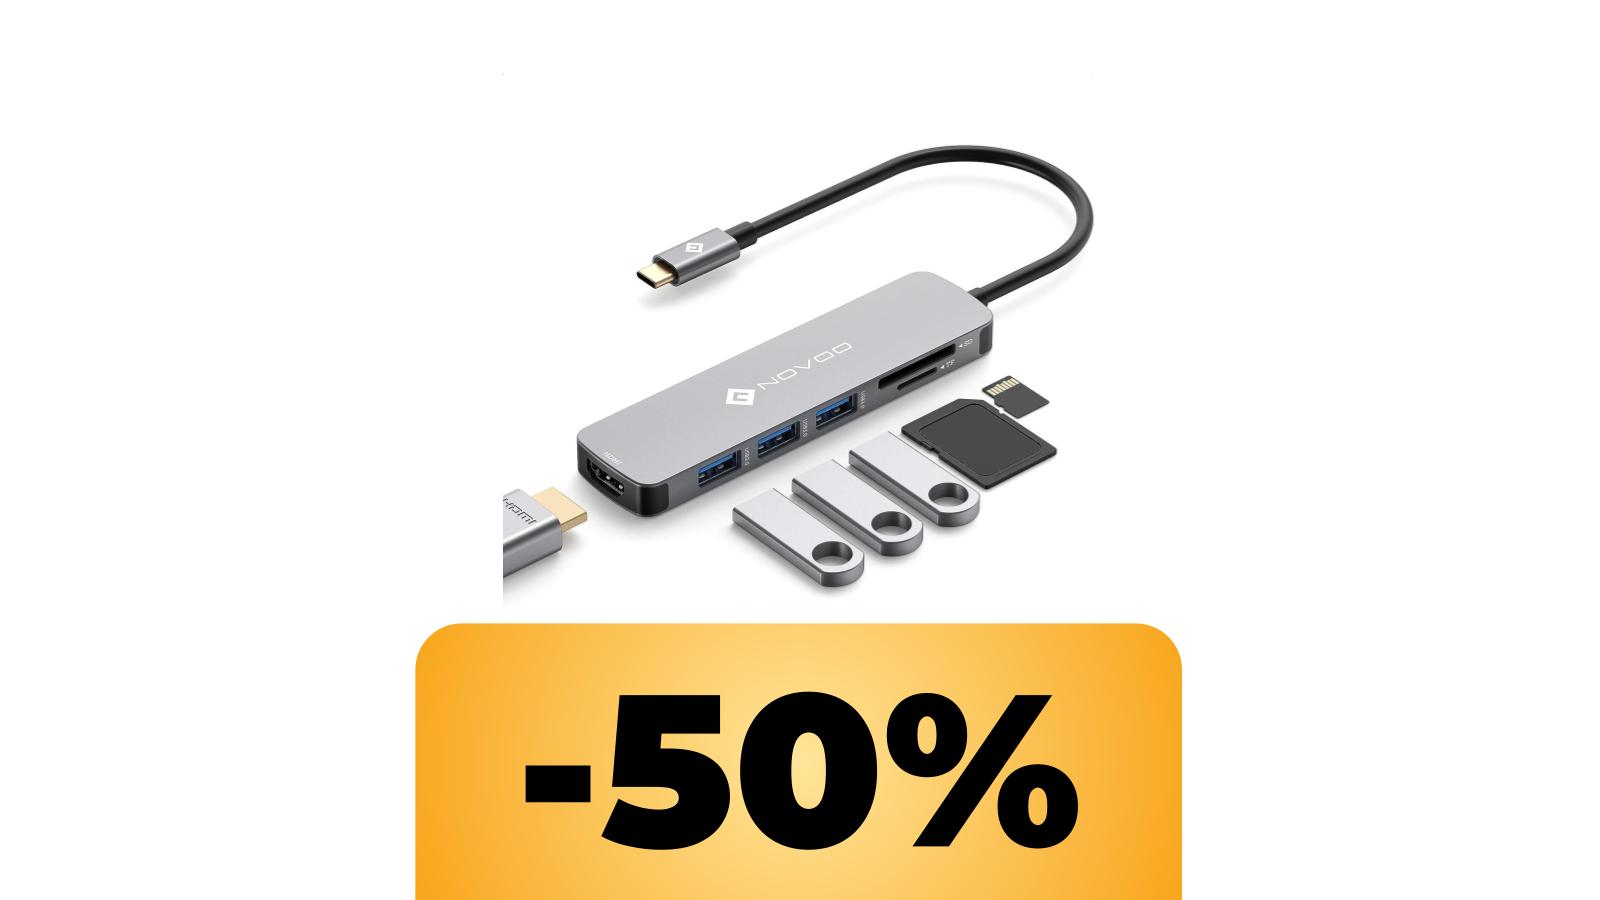 Adattatore USB con HDMI 4K: il coupon lo porta a metà prezzo su Amazon